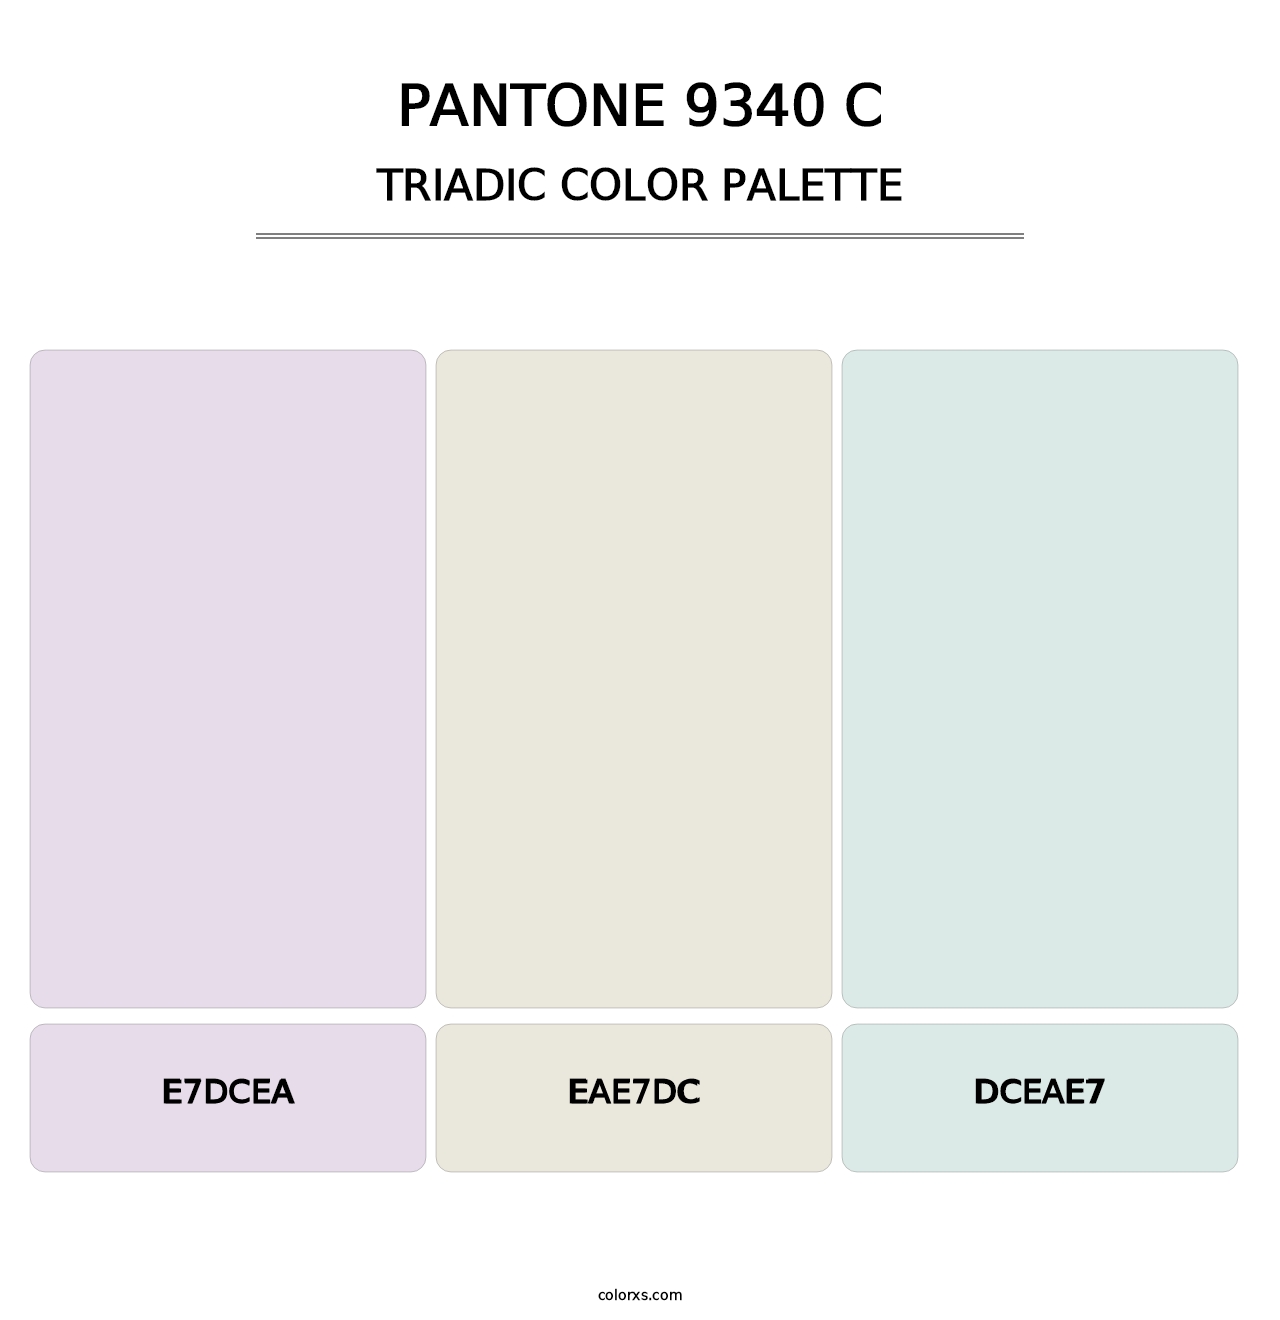 PANTONE 9340 C - Triadic Color Palette